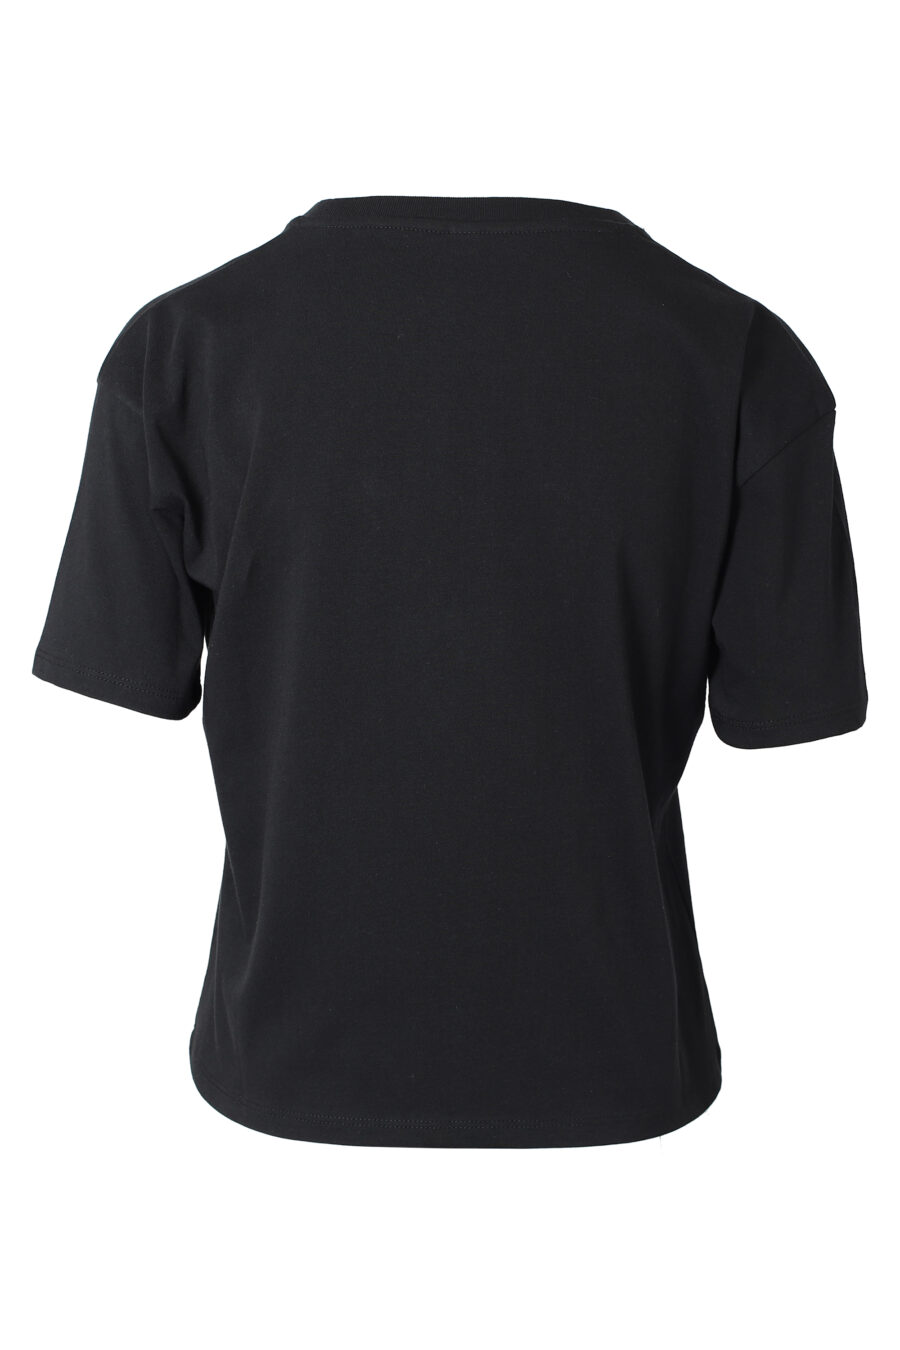 Camiseta negra con minilogo "animal print" - IMG 9803